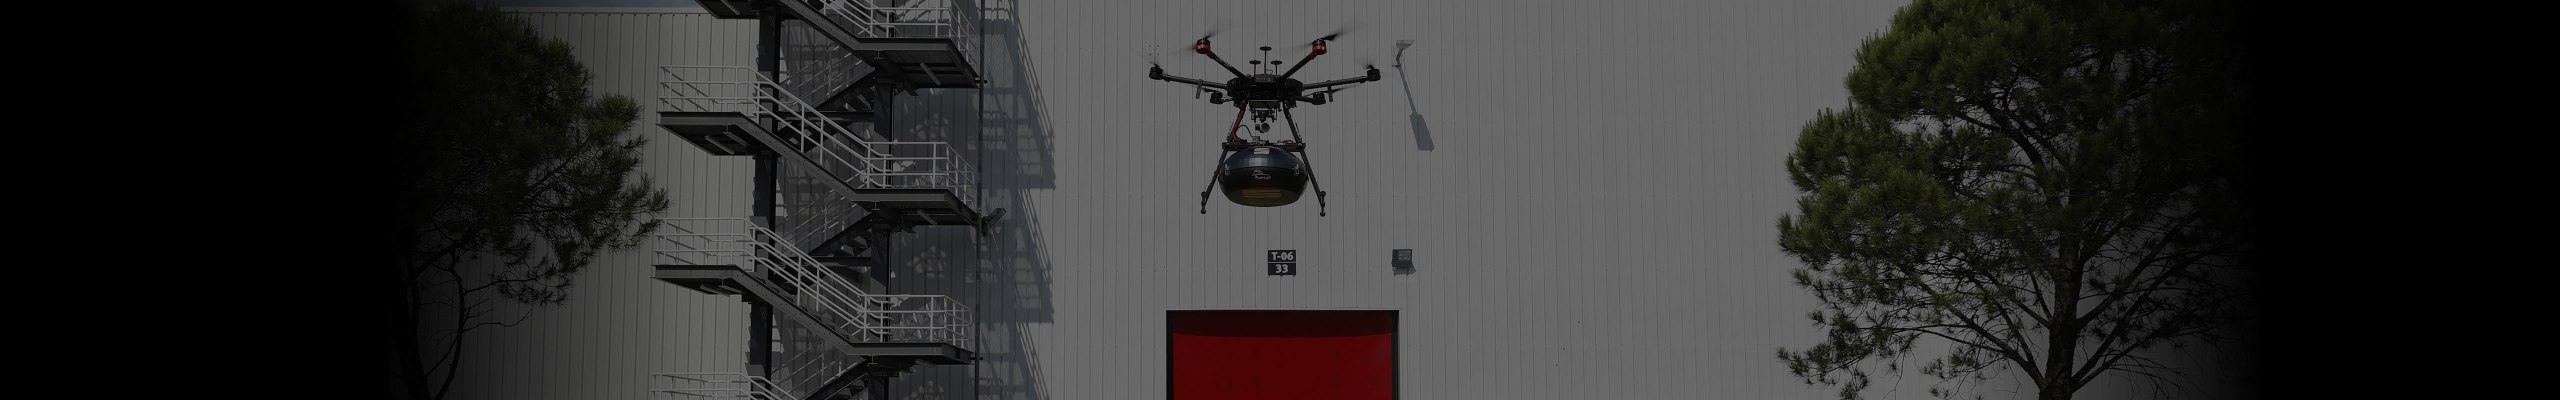 SEAT inaugura la consegna di ricambi via drone e dà il via alla produzione di un nuovo cambio